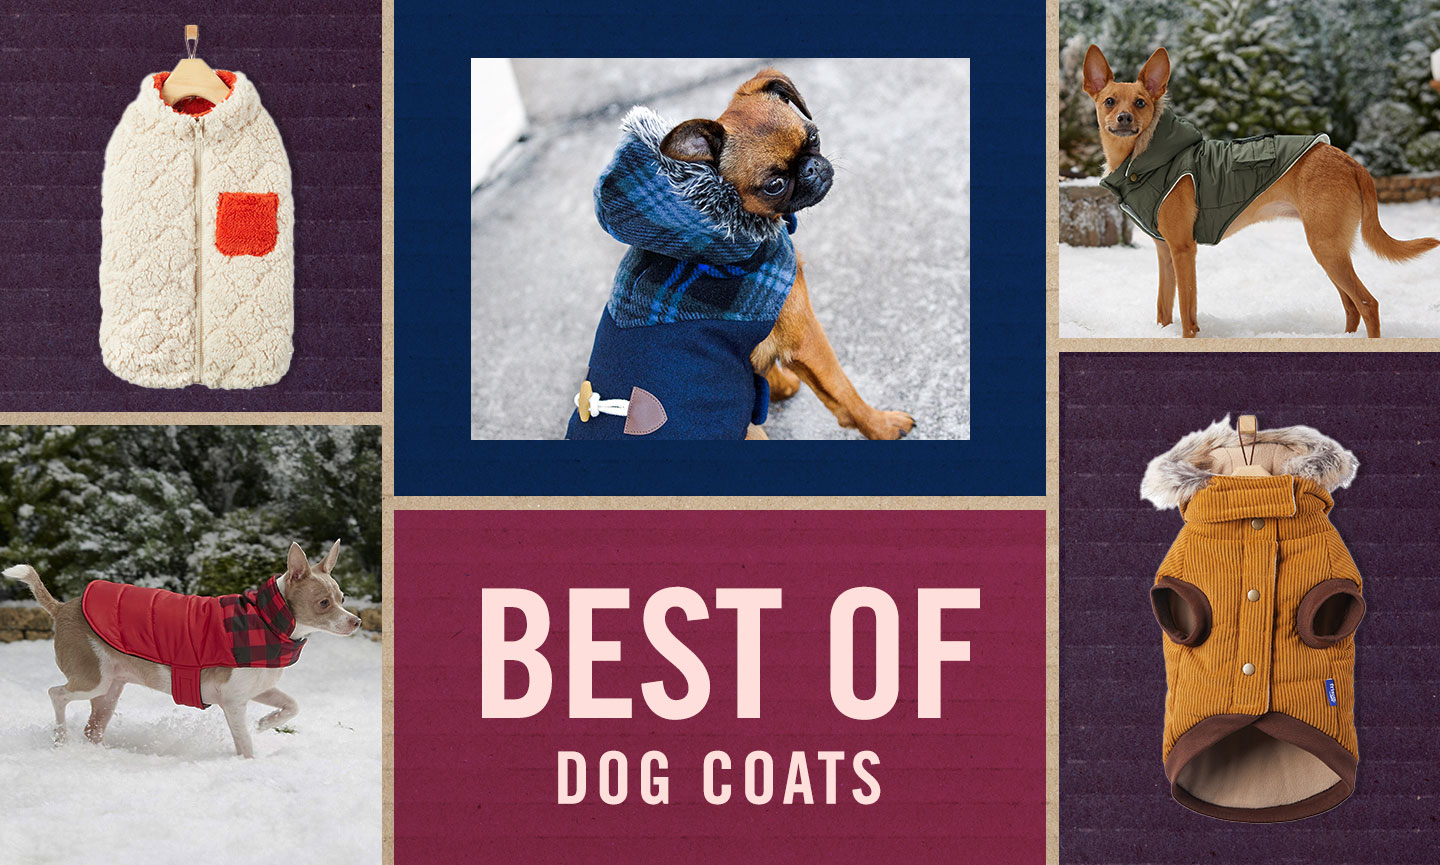 Hot Sale Fashion Designer Dog Warm Coat Fashionable Colorful